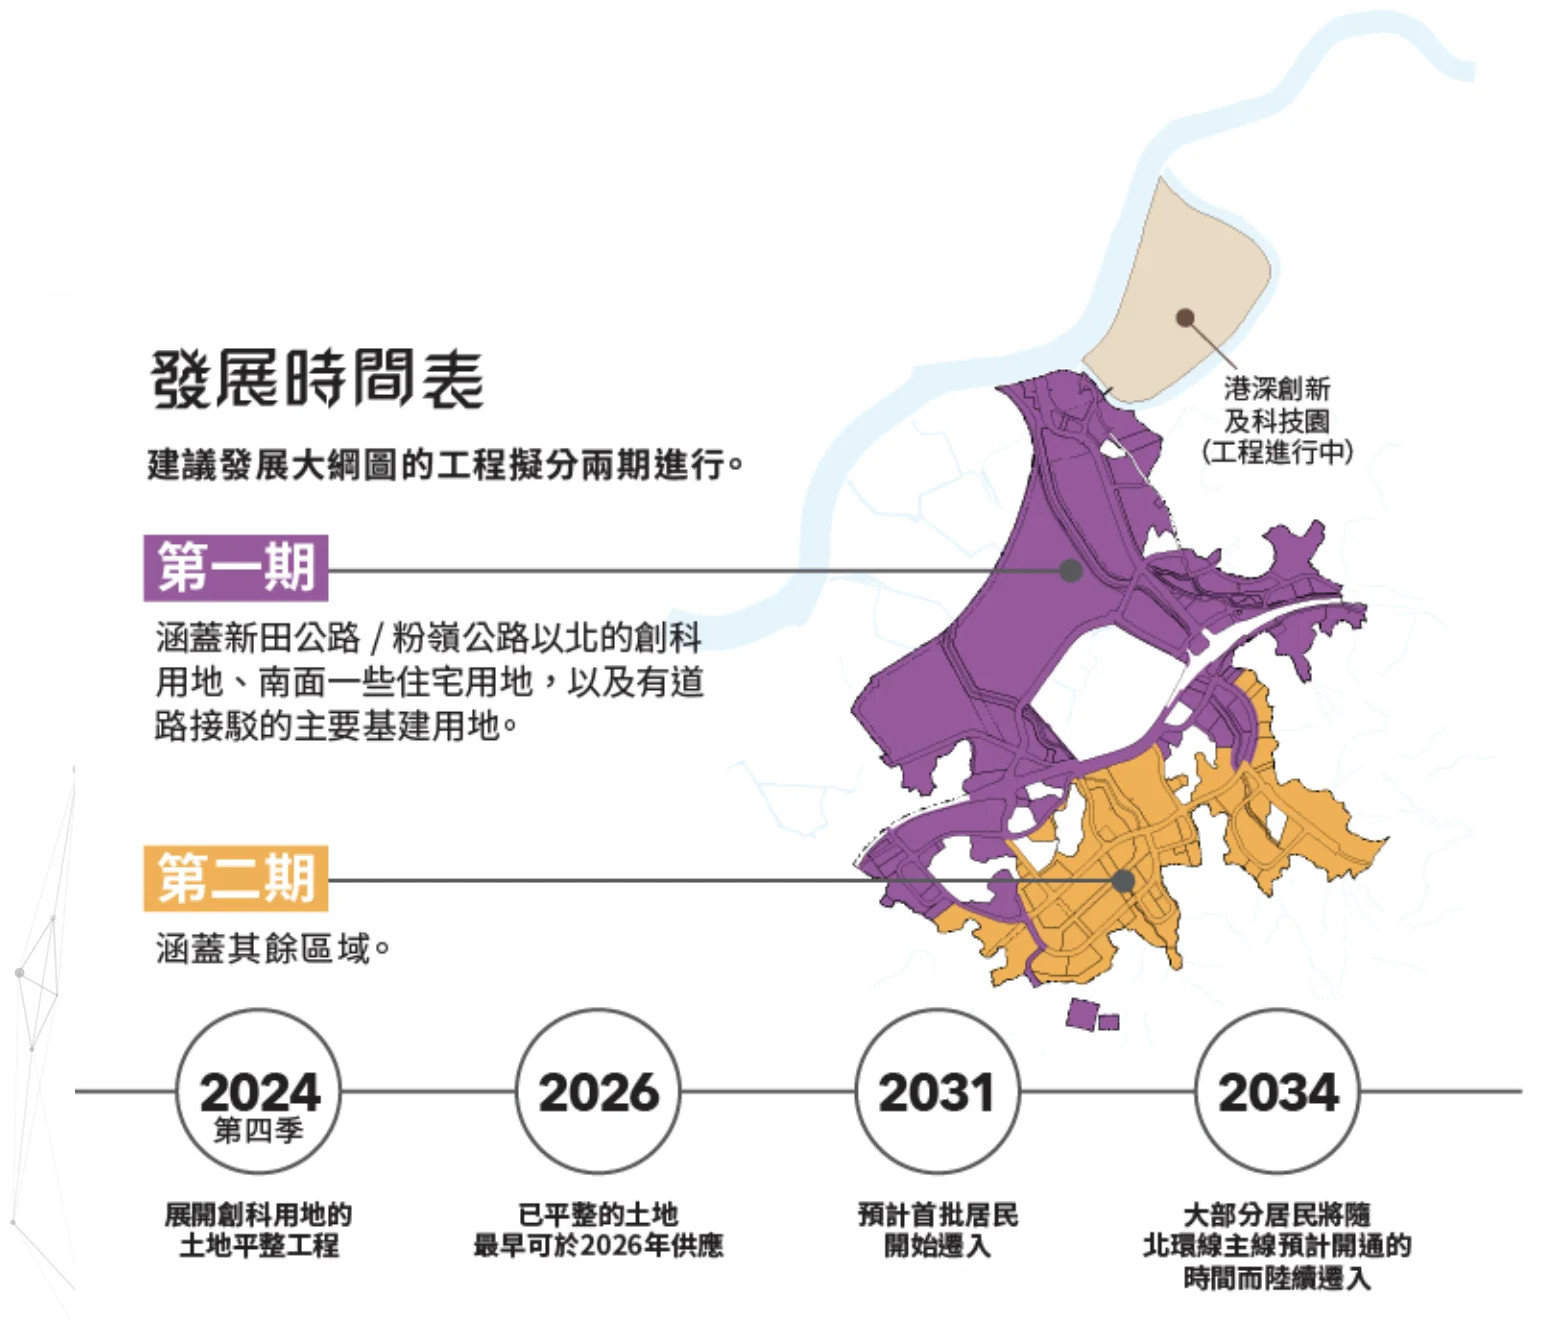 圖為「新田科技城」的發展時間表，紫色區域為第一期發展區域，當中包括下灣村。（政府網頁截圖）